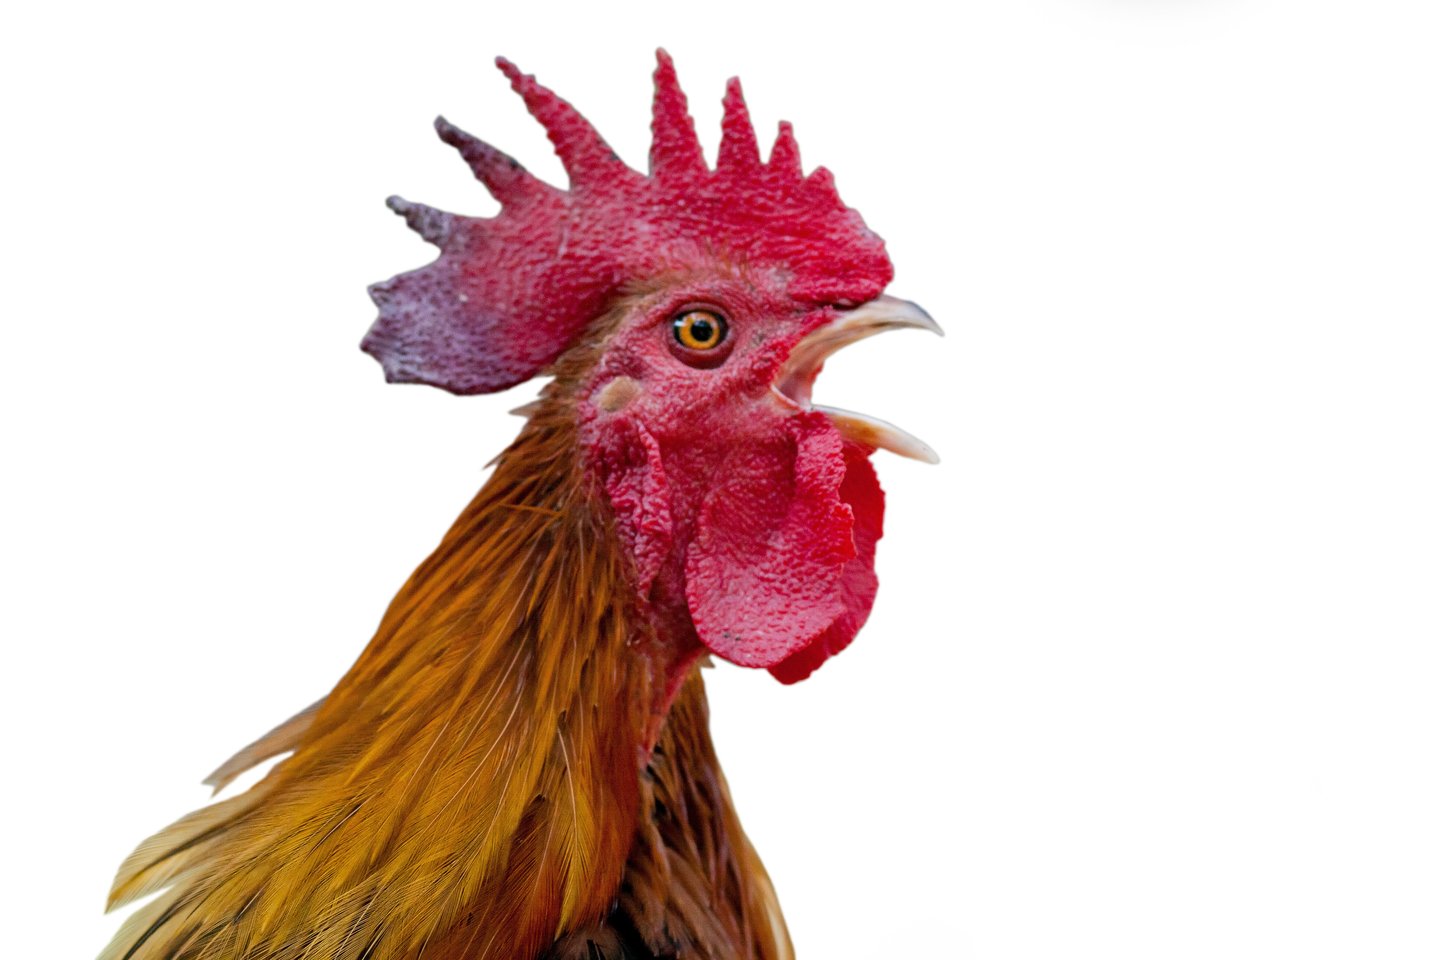 Kiaušinių pramonėje kiekvienais metais perinama milijonai viščiukų, o moteriškos lyties viščiukai parduodami auginimui atskiriems ūkininkams arba komerciniams paukštininkystės ūkiams.<br>123RF nuotr.